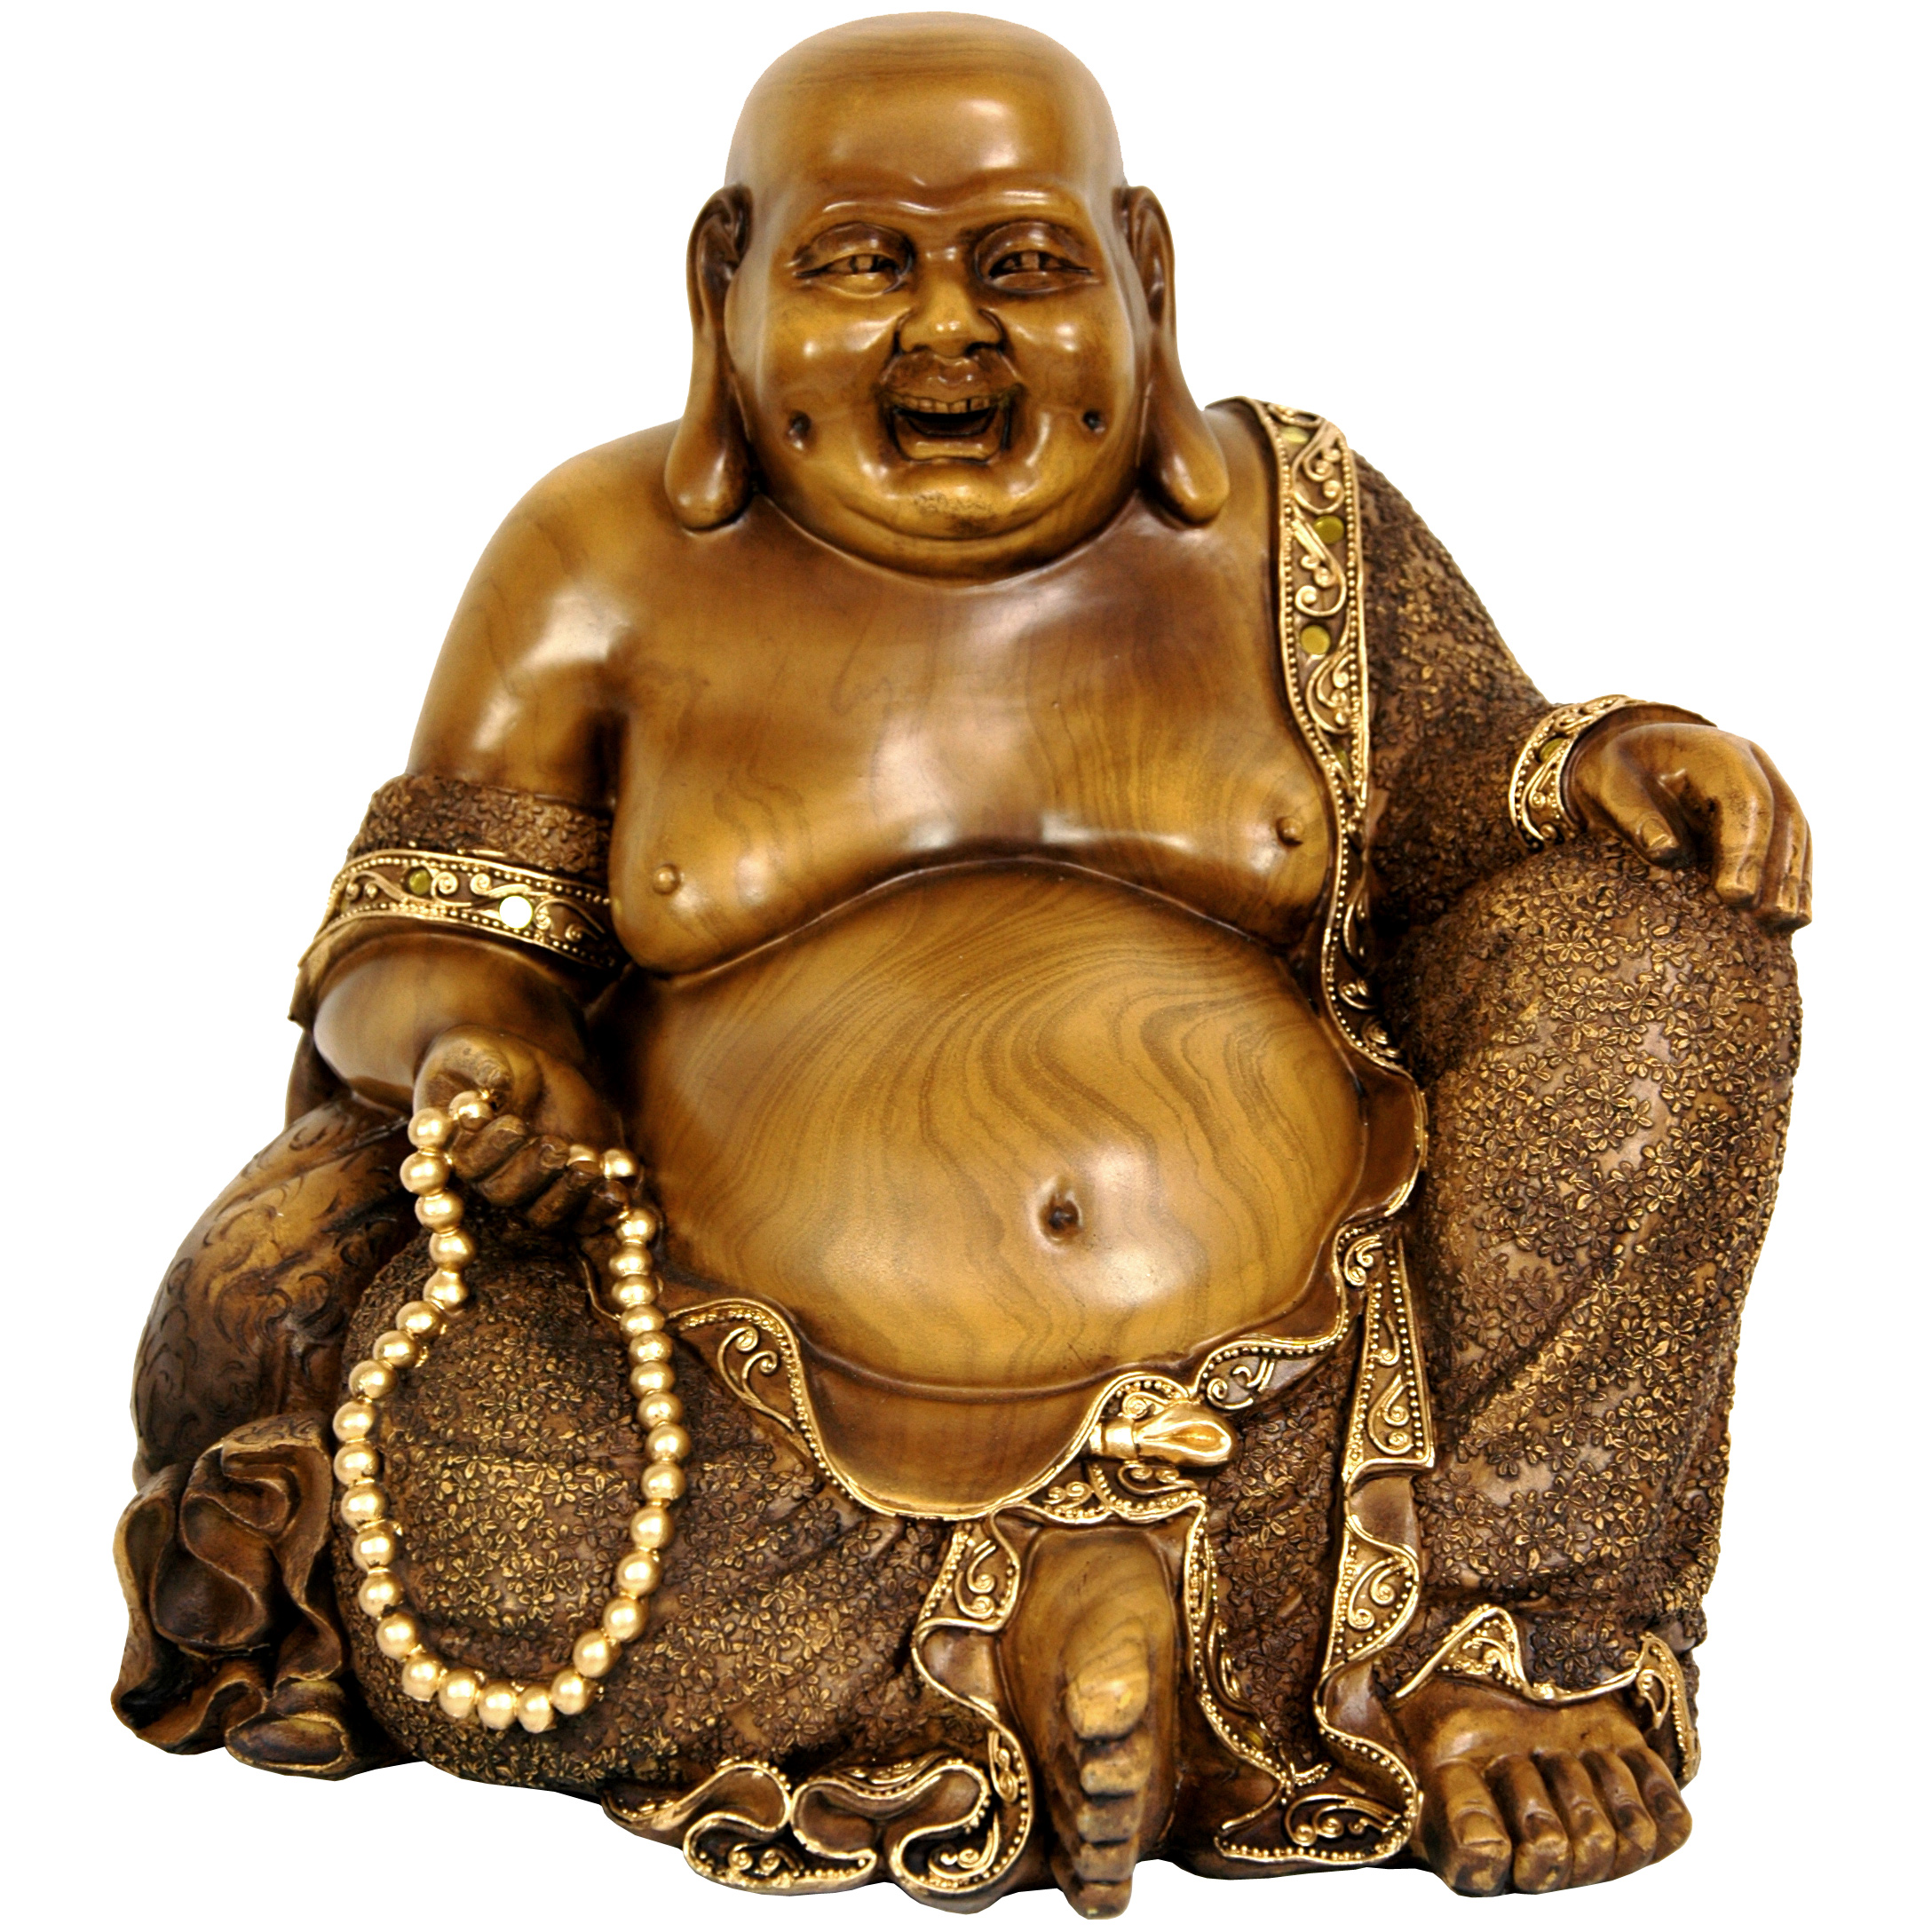 buy-10-sitting-hotei-happy-buddha-statue-online-sta-bud20